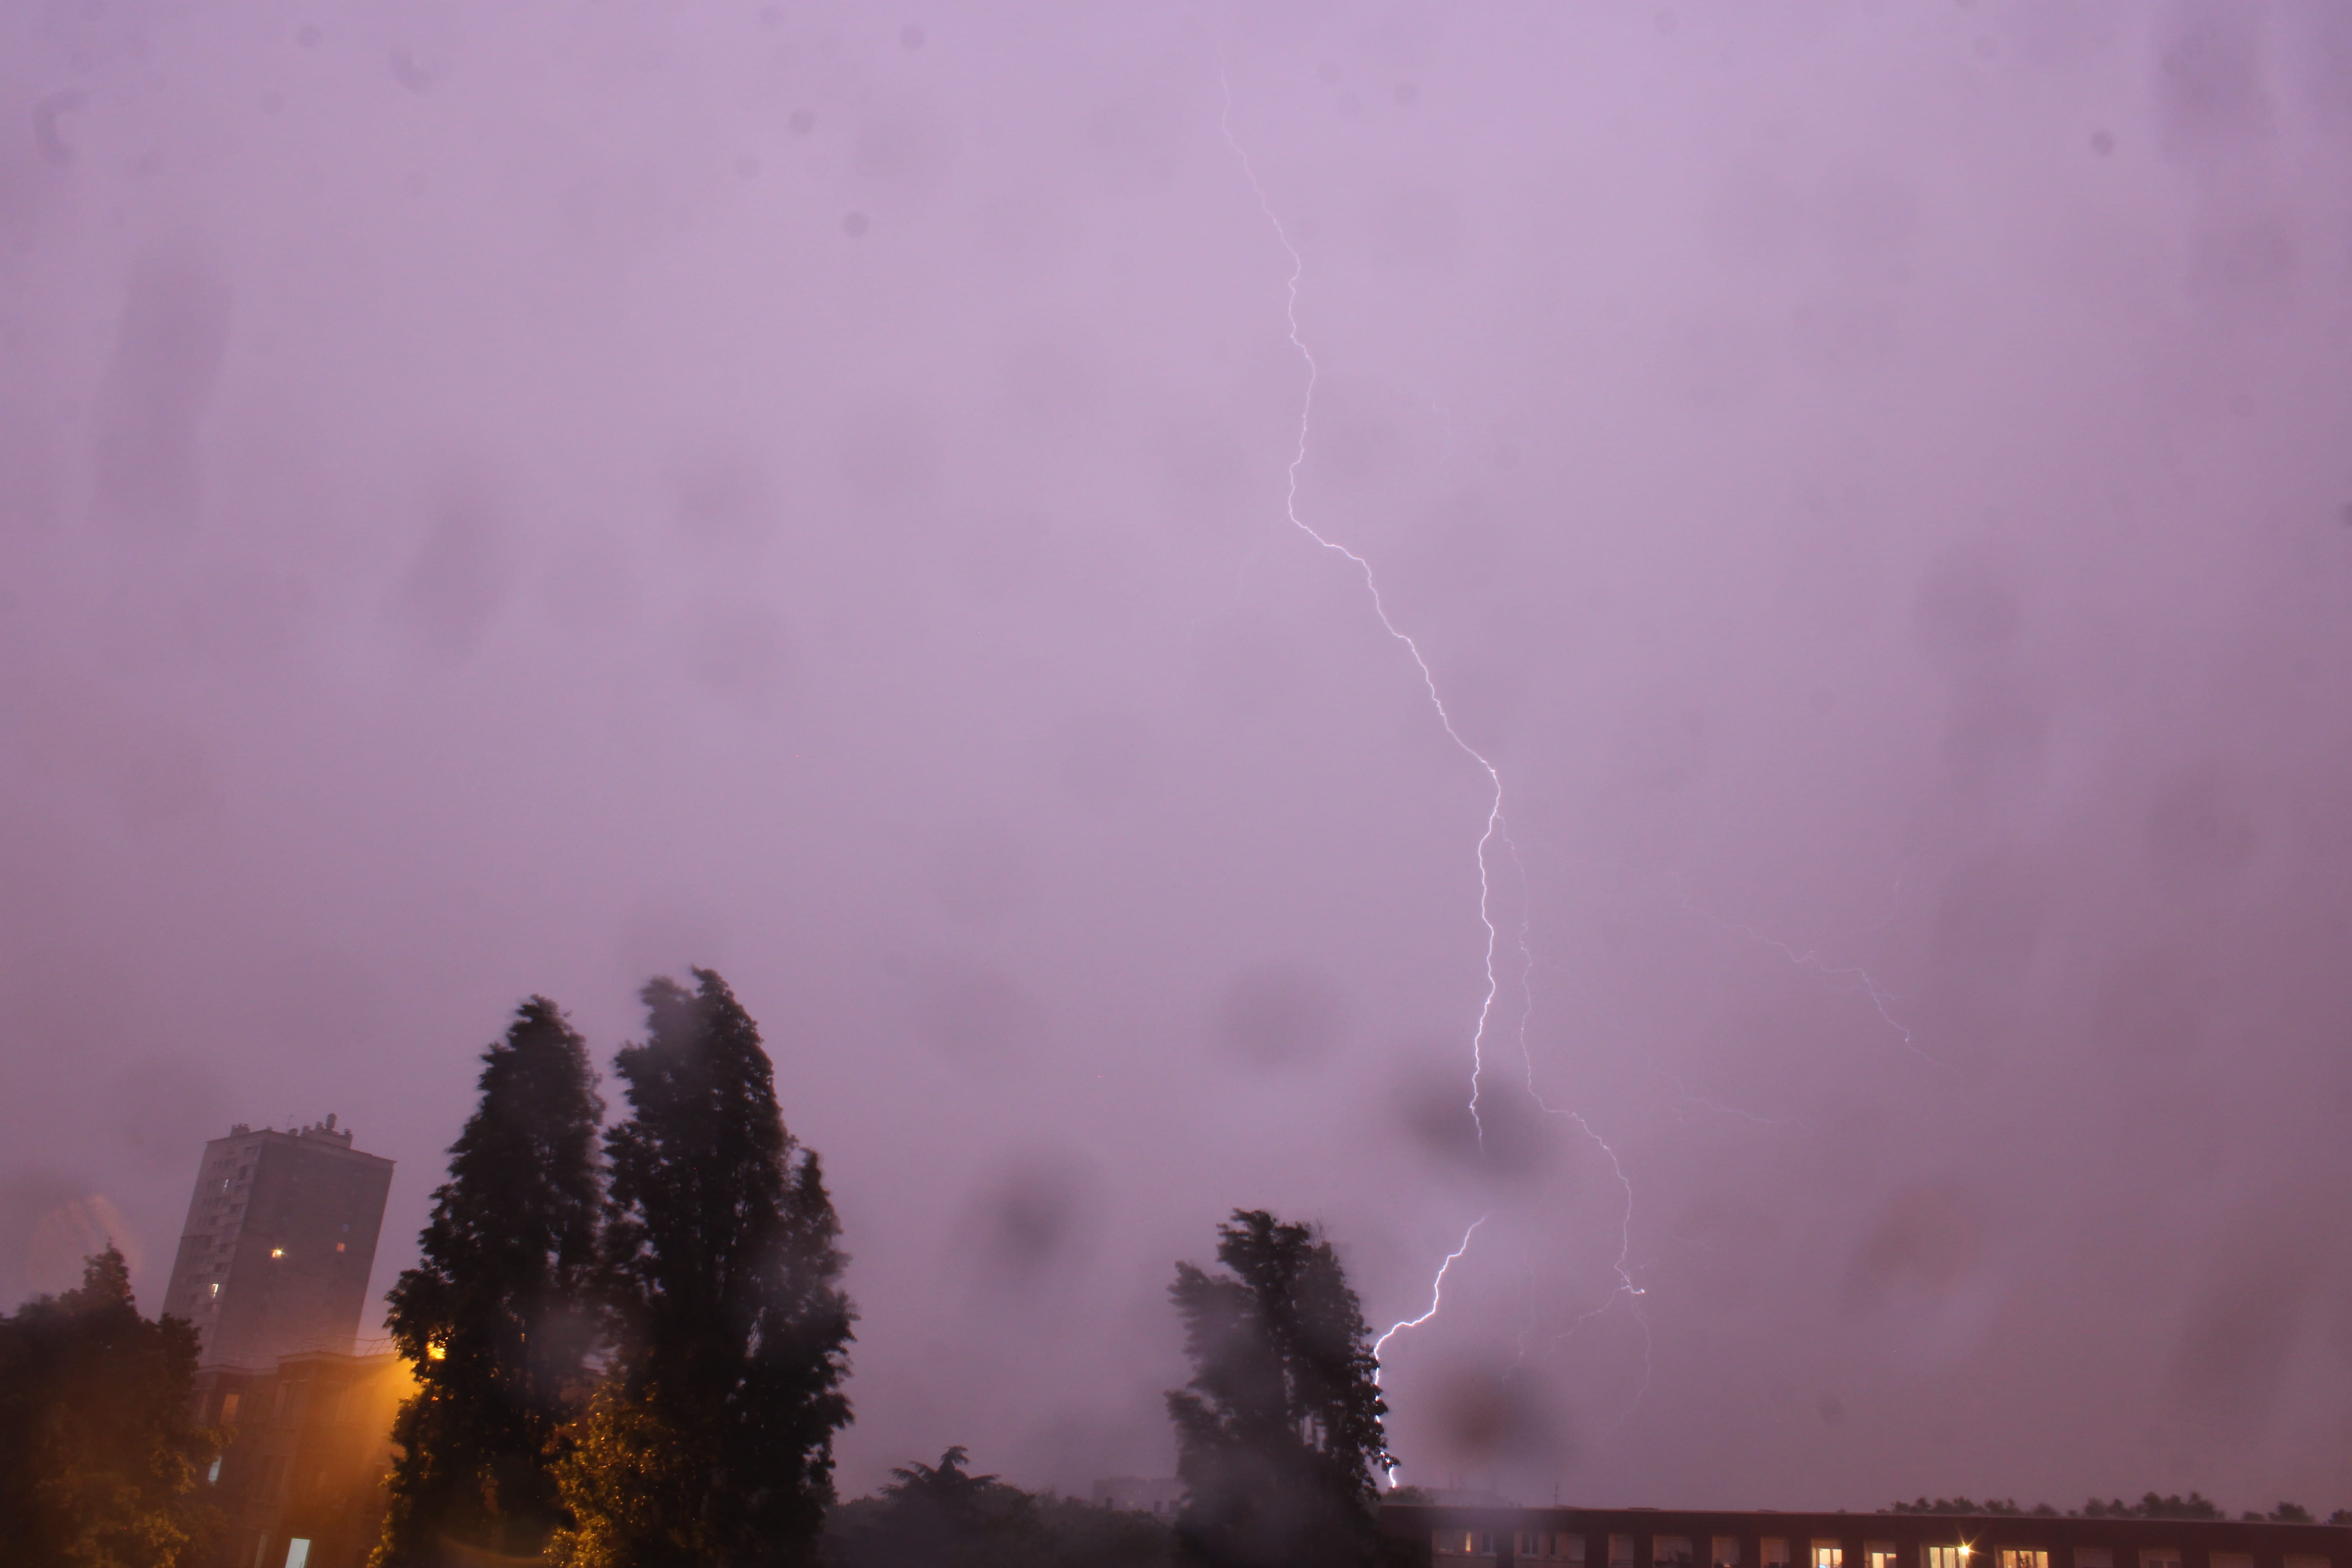 Impact de foudre lors d'un orage en région parisienne dans la soirée du 9 au 10 Mai. Activité électrique modérée. - 10/05/2020 00:13 - Sofiane Bourichi